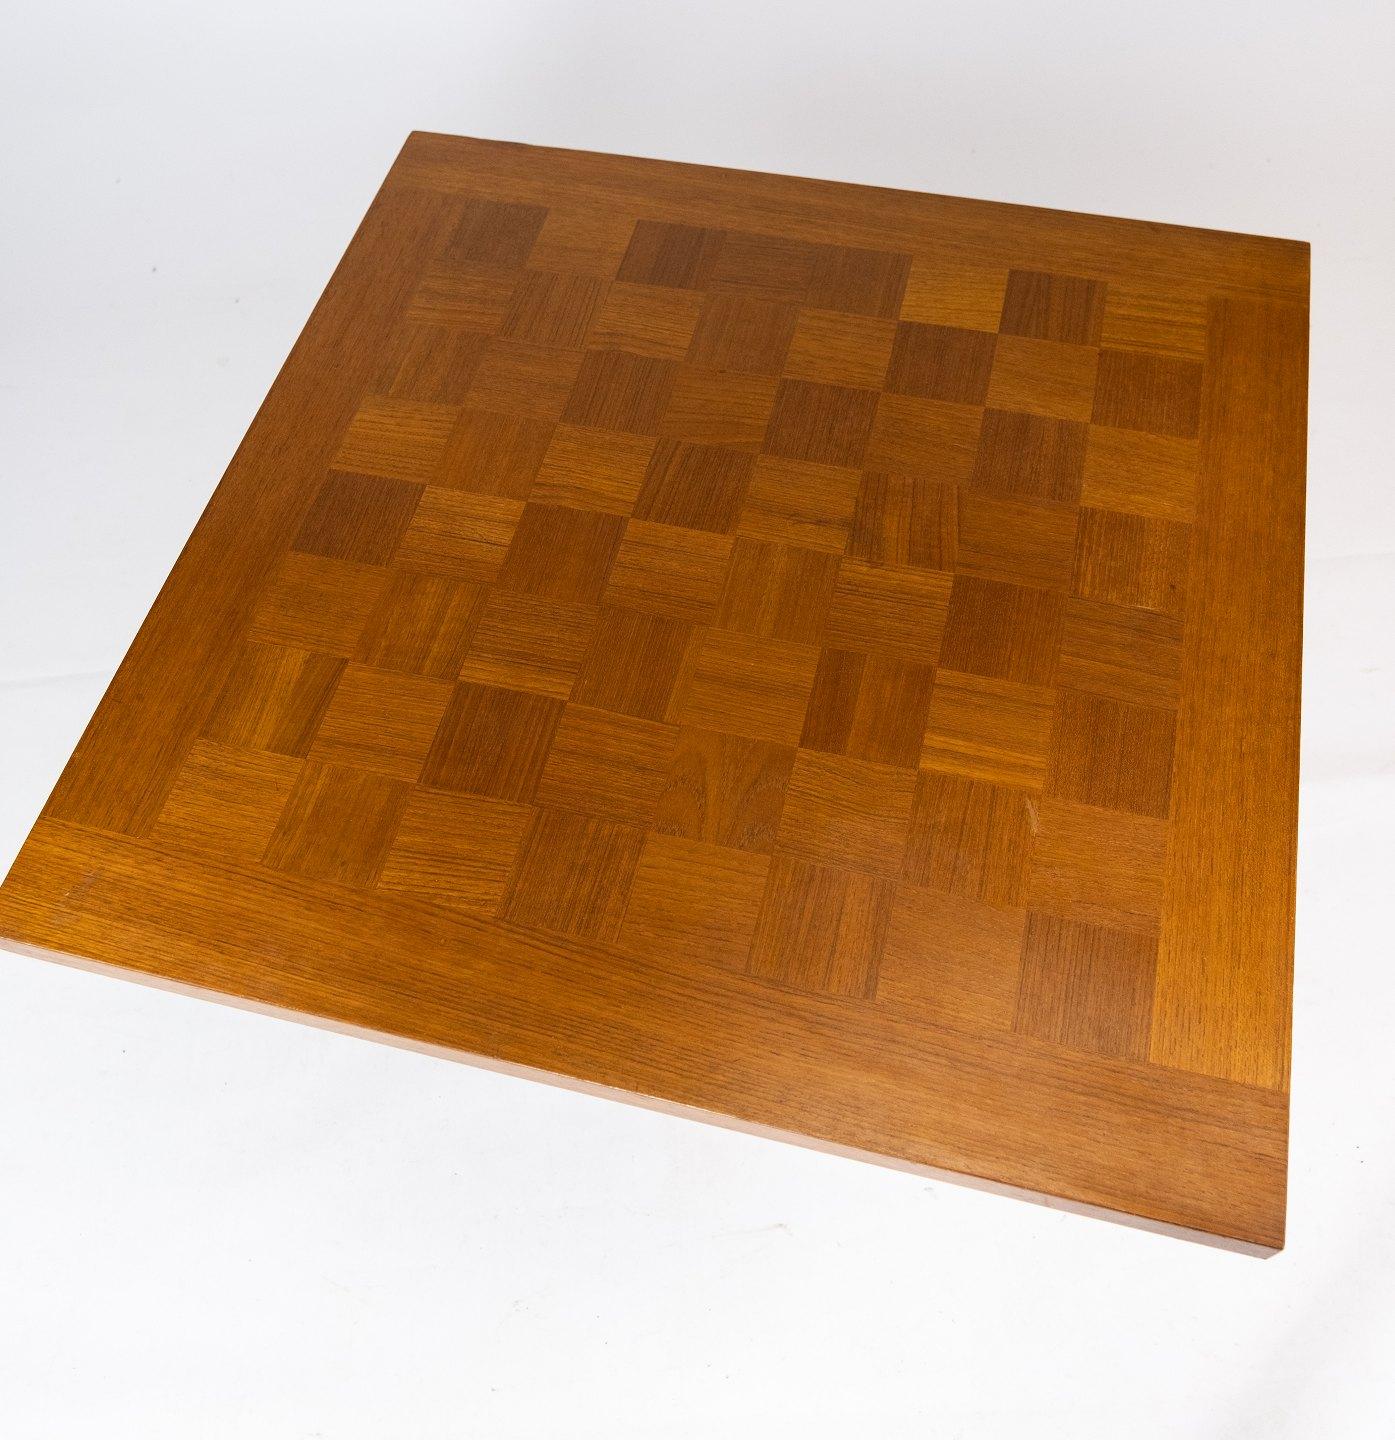 Cette table basse, emblème du design danois des années 1960, reflète la vision novatrice de Poul Cadovius et le savoir-faire réputé de France & Son. Fabriqué en bois de teck, il dégage chaleur et sophistication.

L'éthique du design de Cadovius